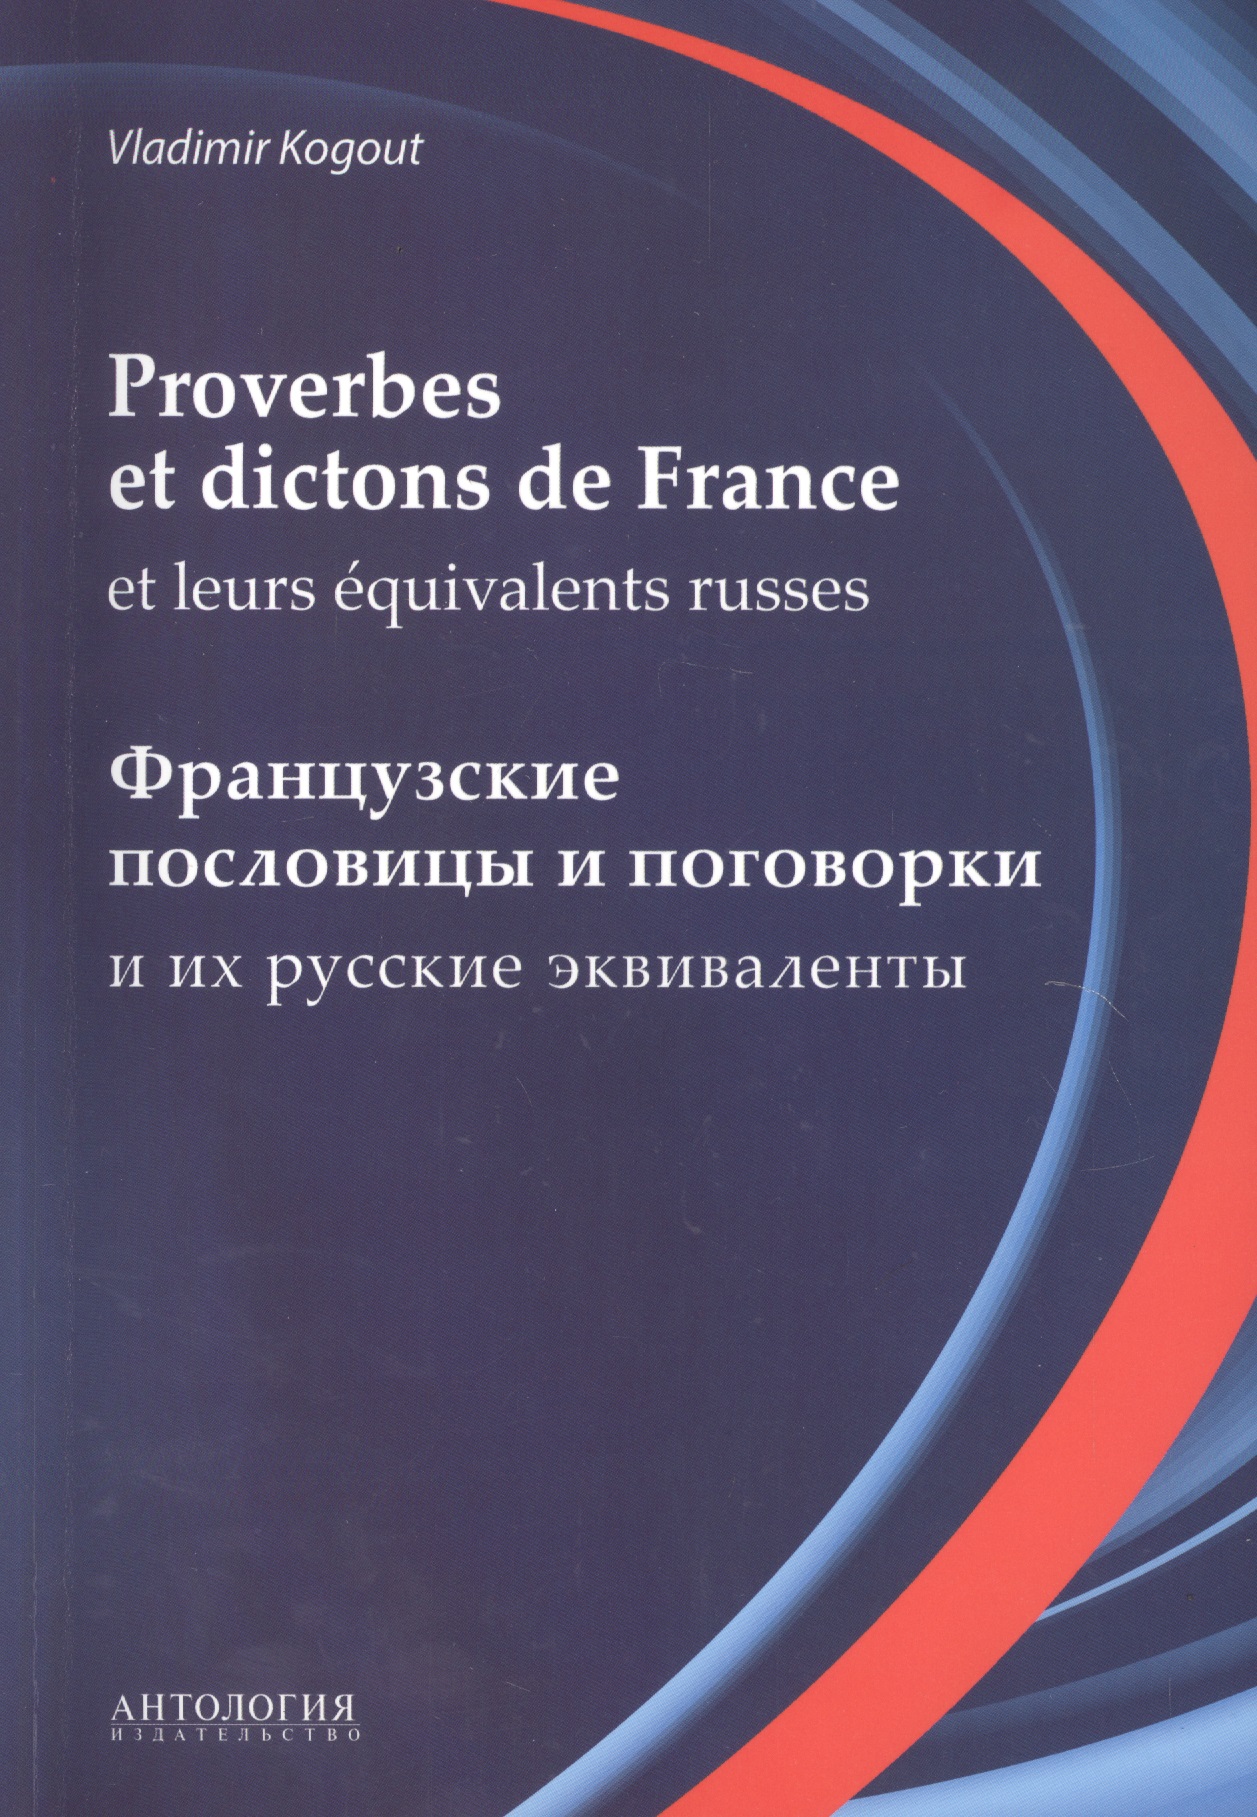      (Proverbes et dictons de France et leurs equivalents russes)